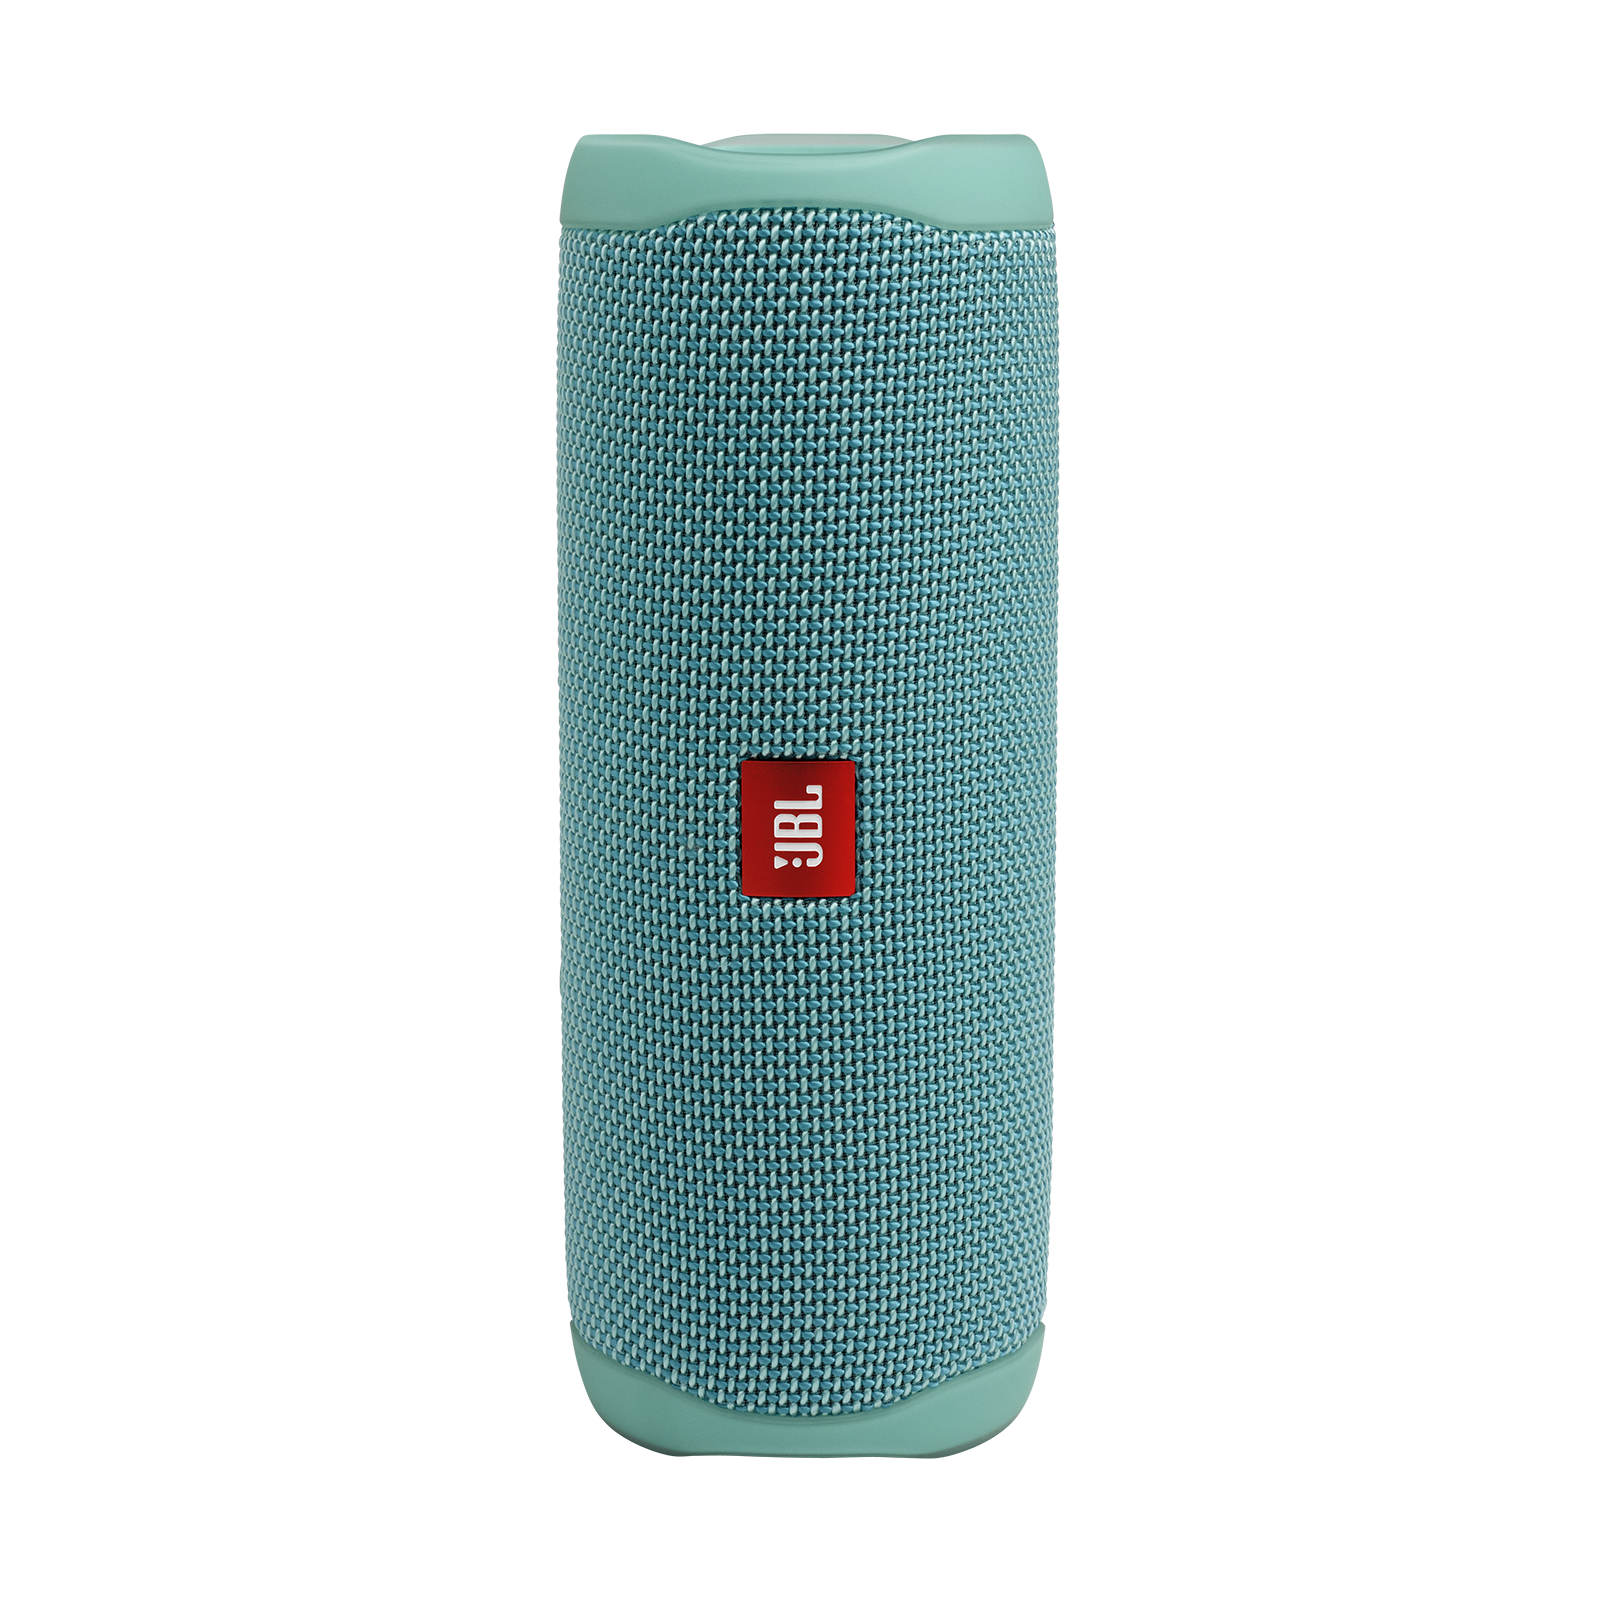 JBL Flip 5 - Teal - Portable Waterproof Speaker - Hero